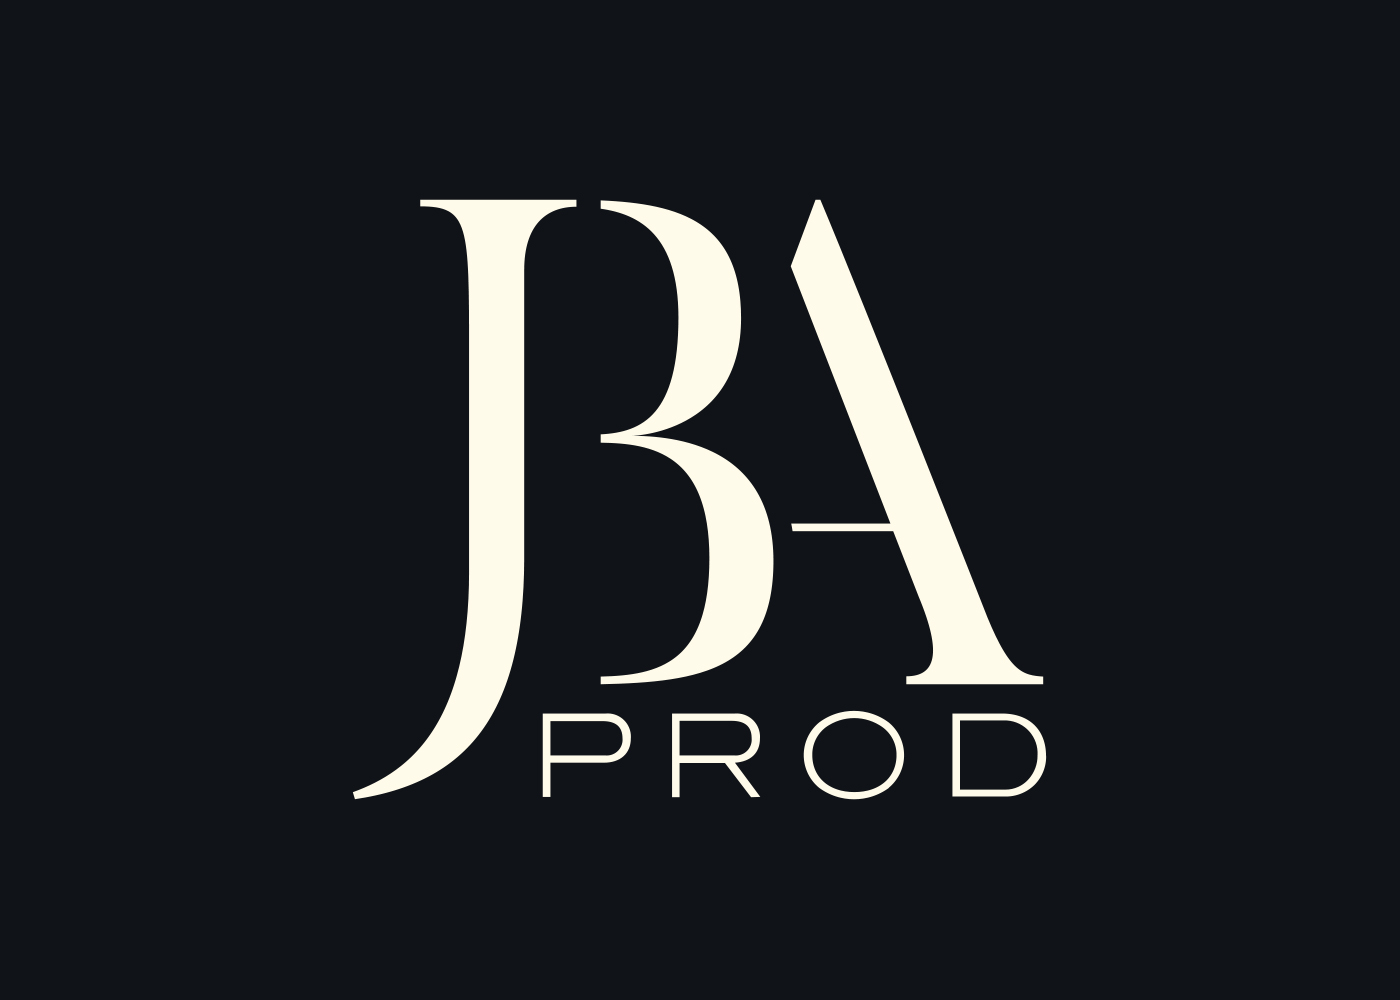 JBA Prod - Création du logo et de l'identité de marque